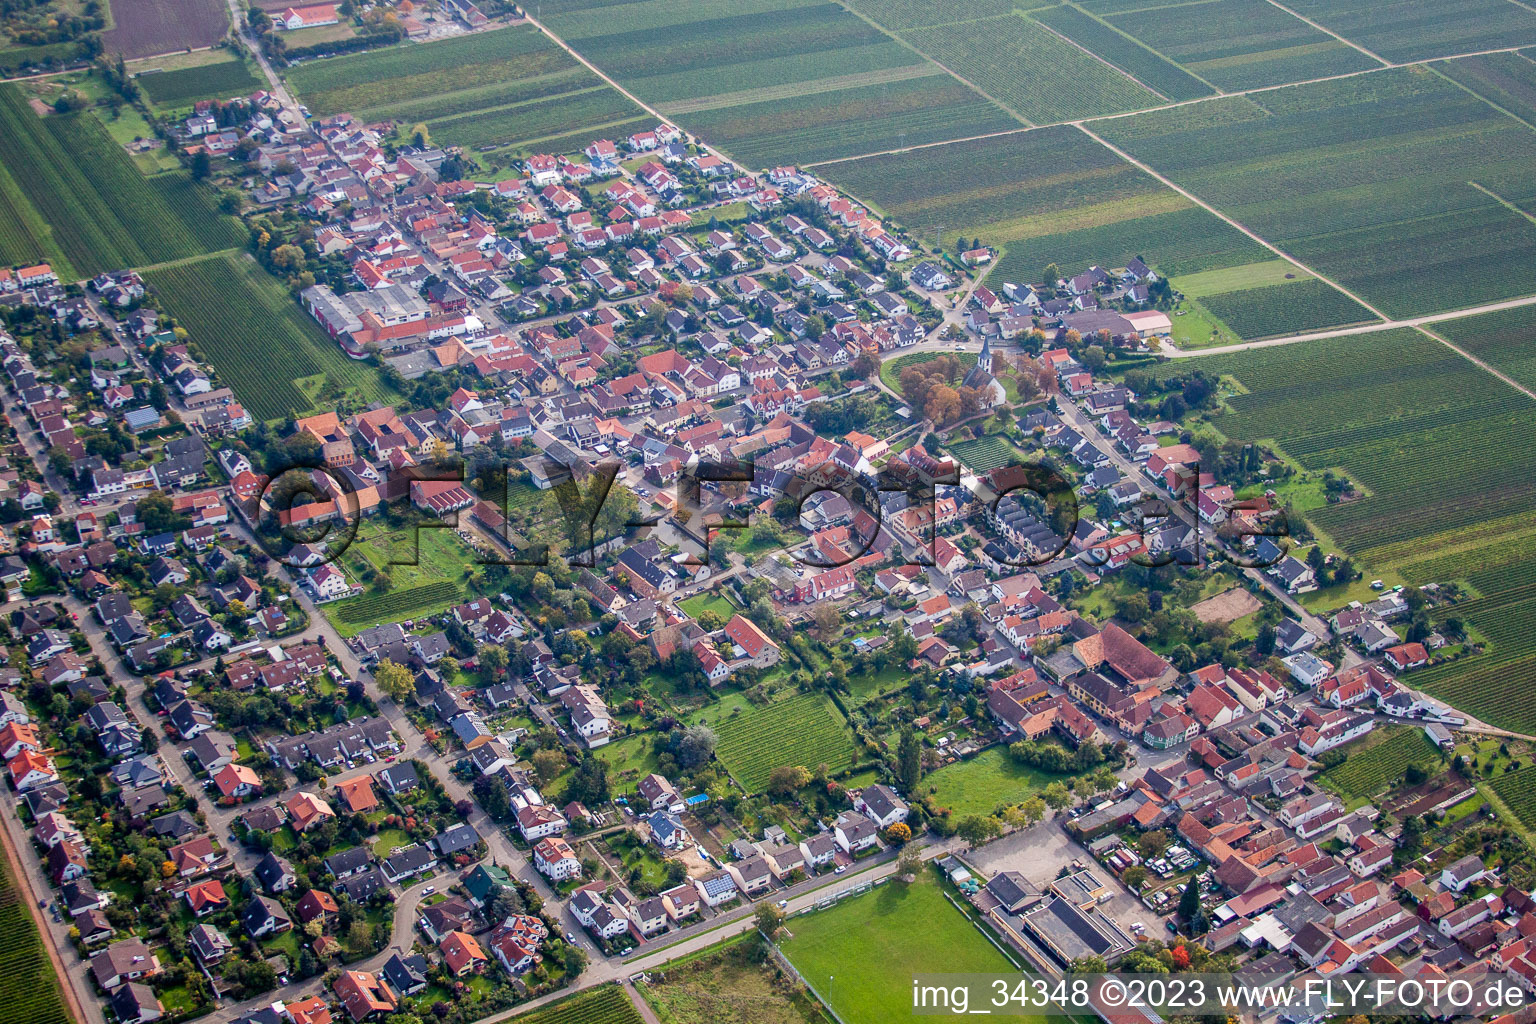 Friedelsheim im Bundesland Rheinland-Pfalz, Deutschland aus der Luft betrachtet